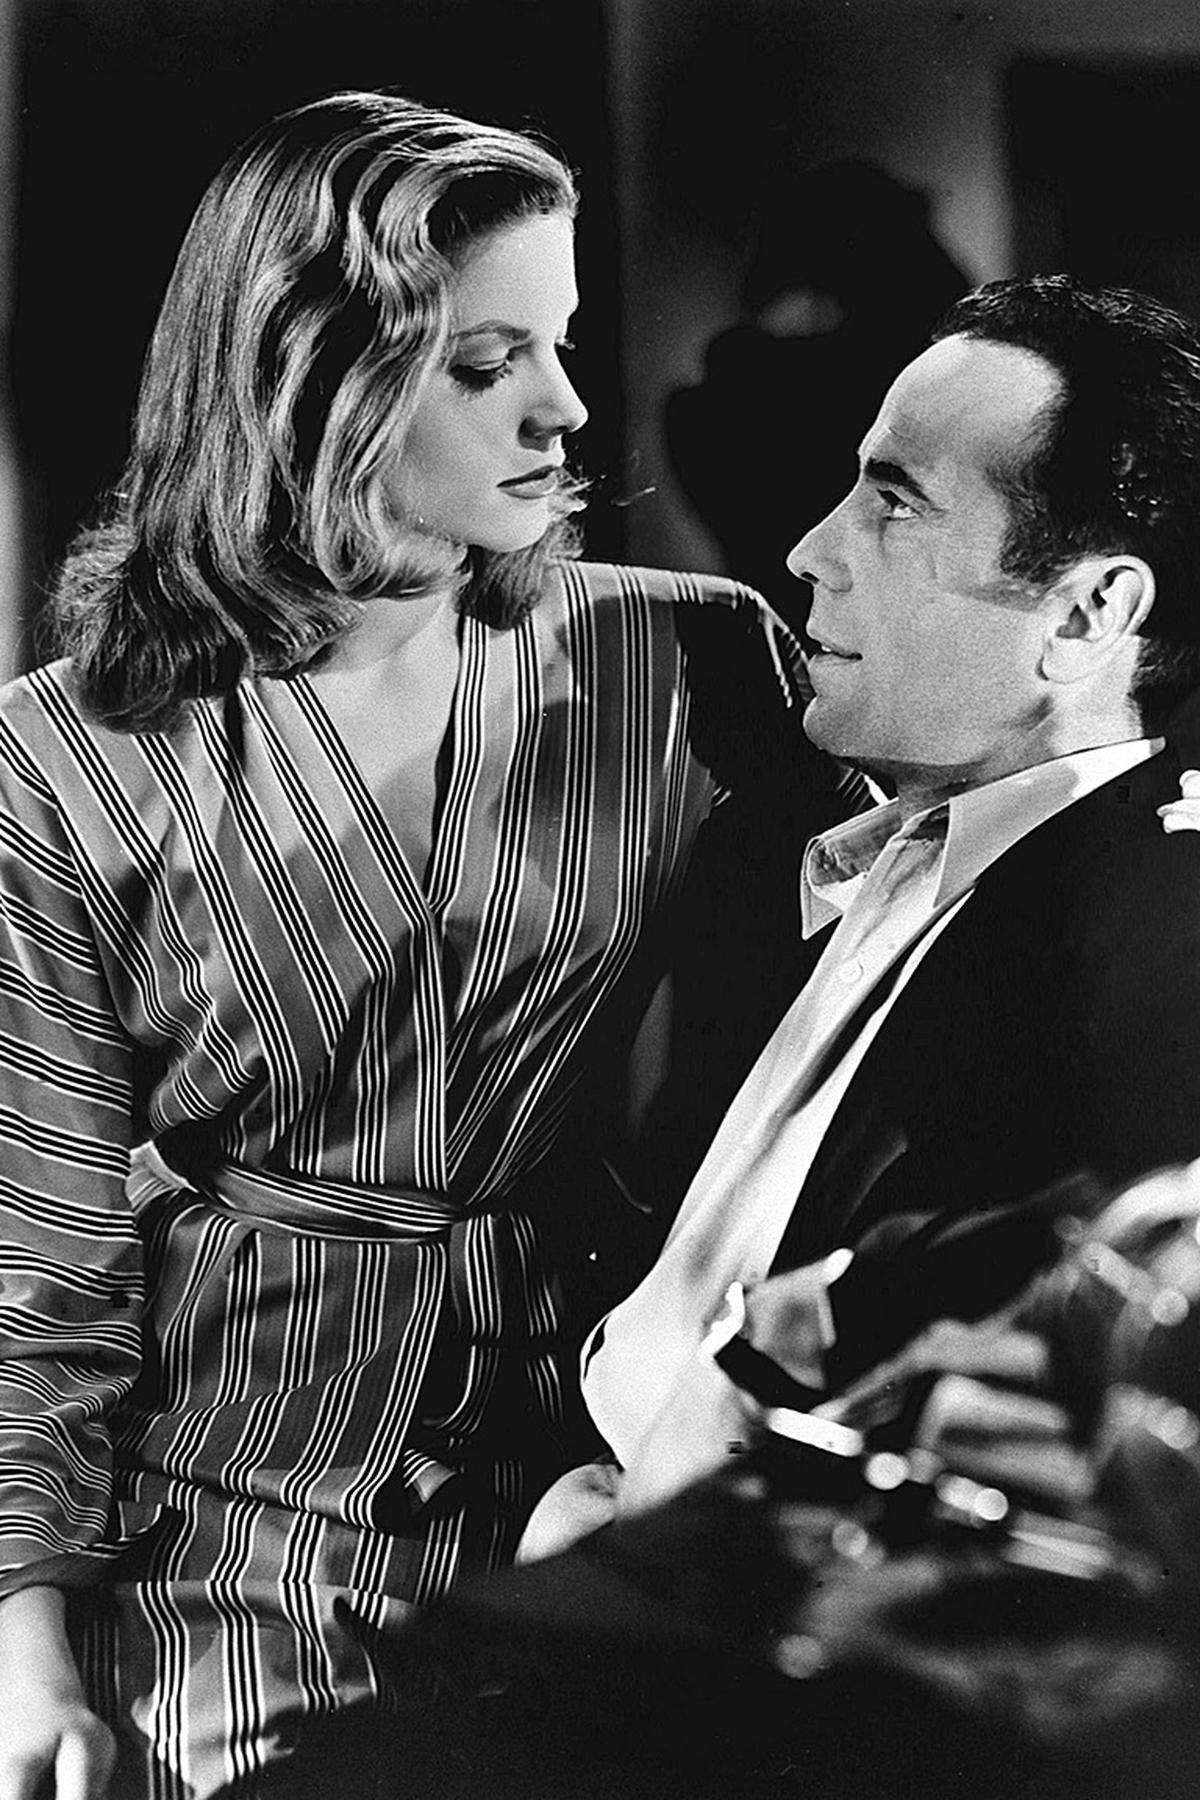 Mit Bogart begann auch Bacalls Filmkarriere. "Haben Sie mal Feuer?", war der berühmte Satz in der Anfangsszene der Hemingway-Verfilmung "To Have and Have Not".